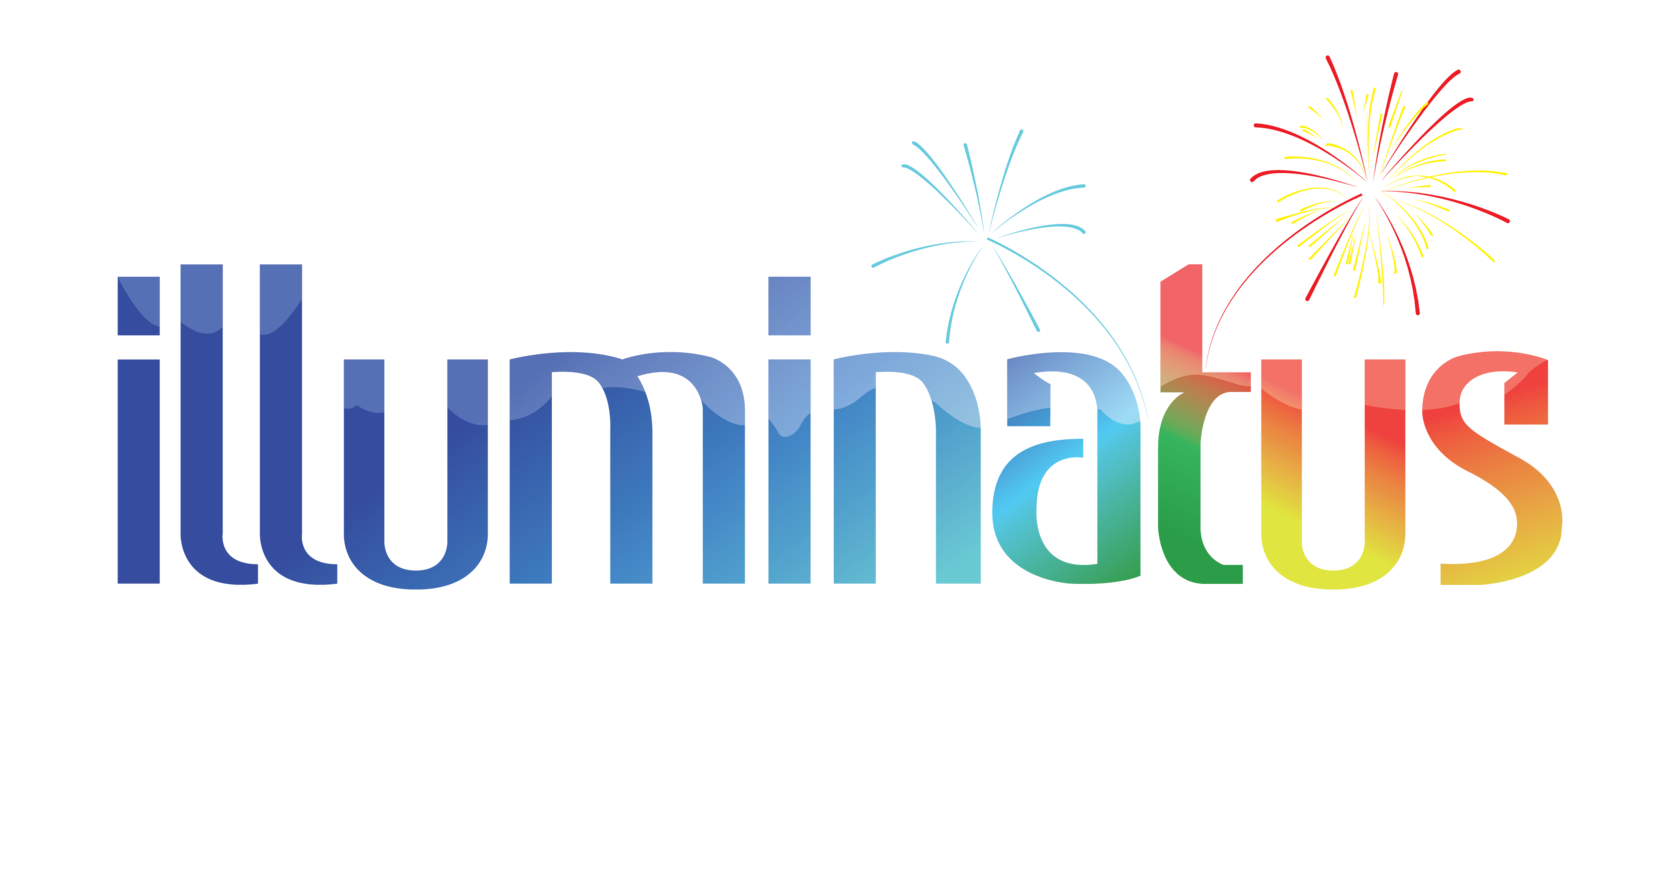 Illuminatus Pyrotechnics